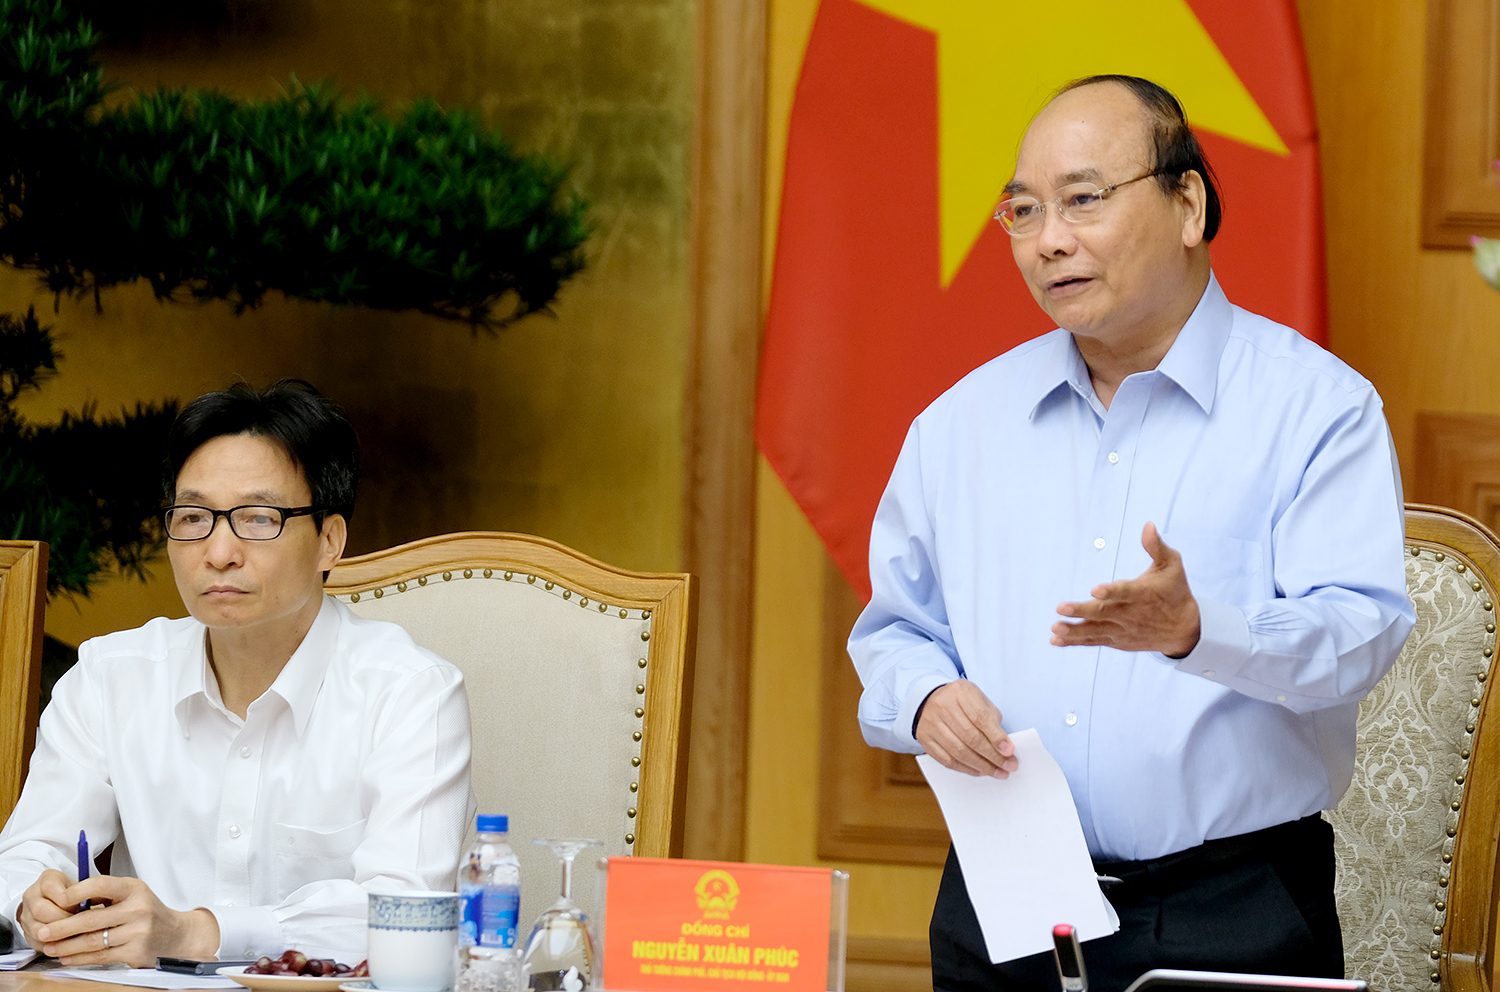 Thủ tướng Nguyễn Xuân Phúc đề nghị sớm đưa vào chương trình giảng dạy của các trường vấn đề khởi nghiệp một cách sâu sắc và thực tế hơn. Ảnh: VGP/Quang Hiếu